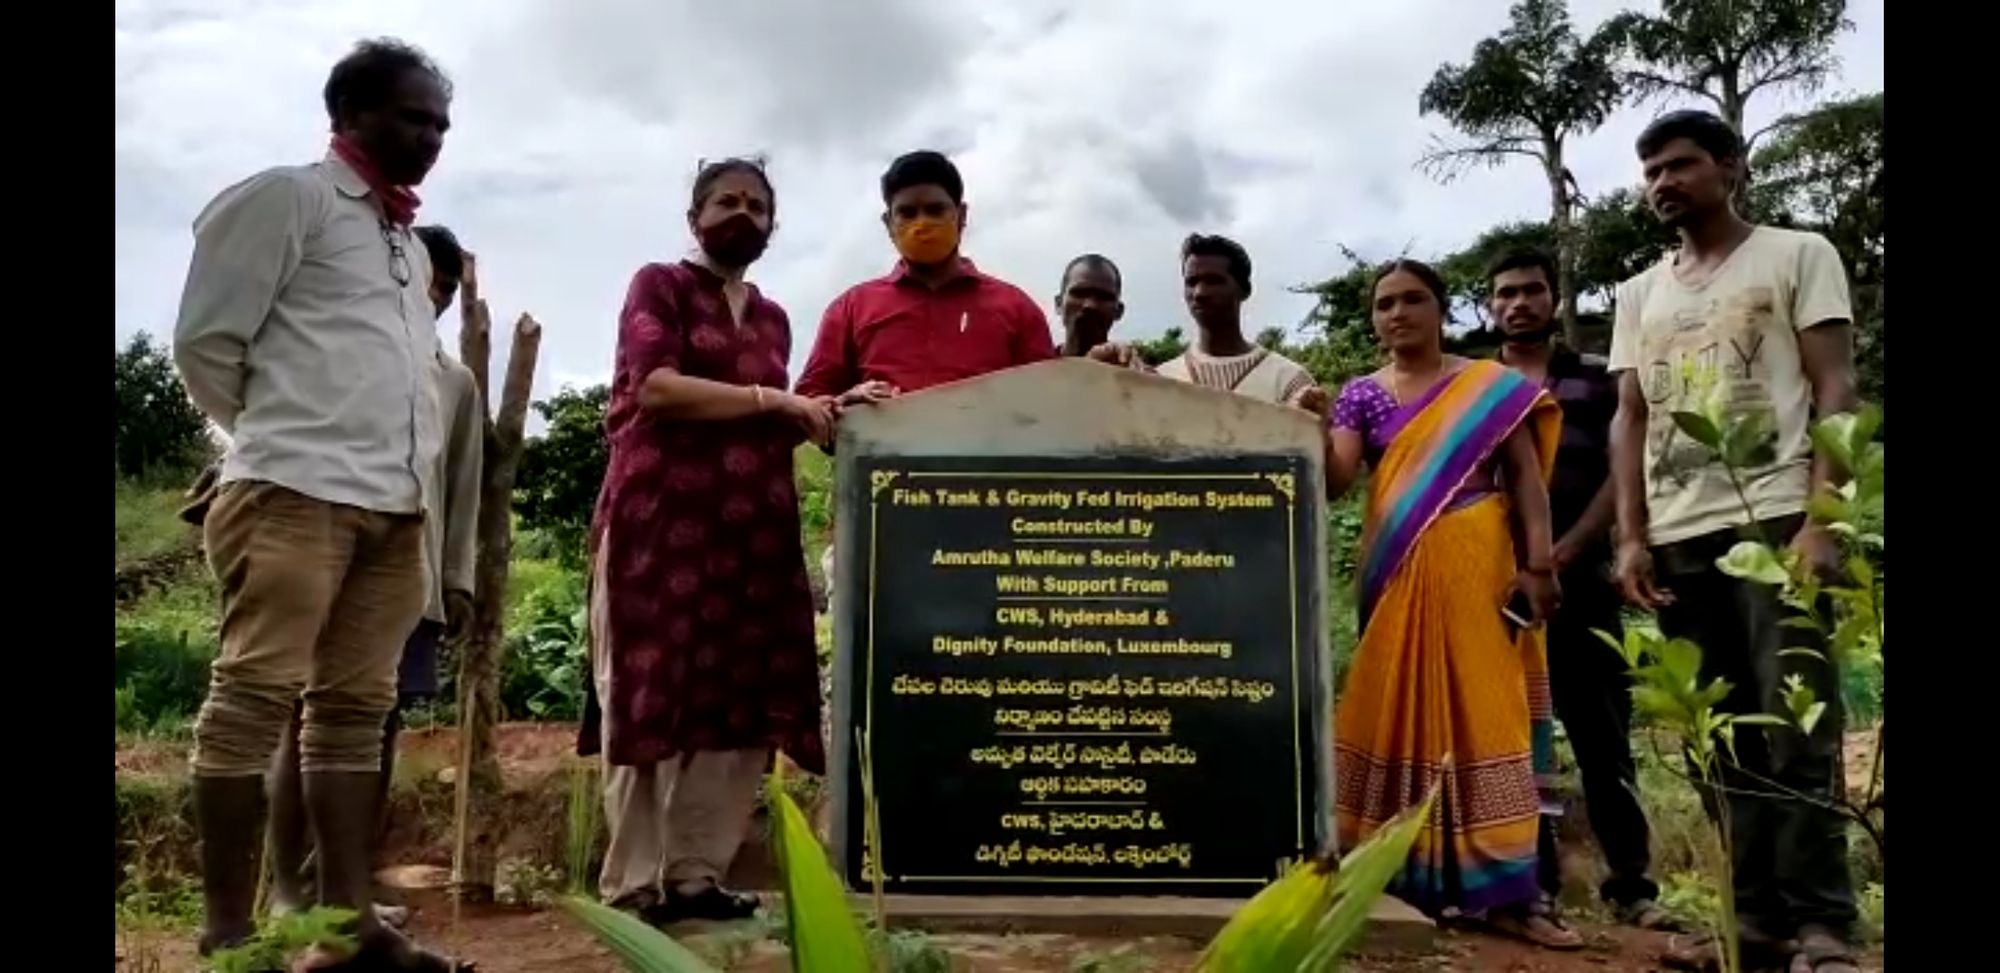 Développement rural de 60 villages indigènes (district de Paderu, Andhra Pradesh)
Projet co-financé par le MAEE